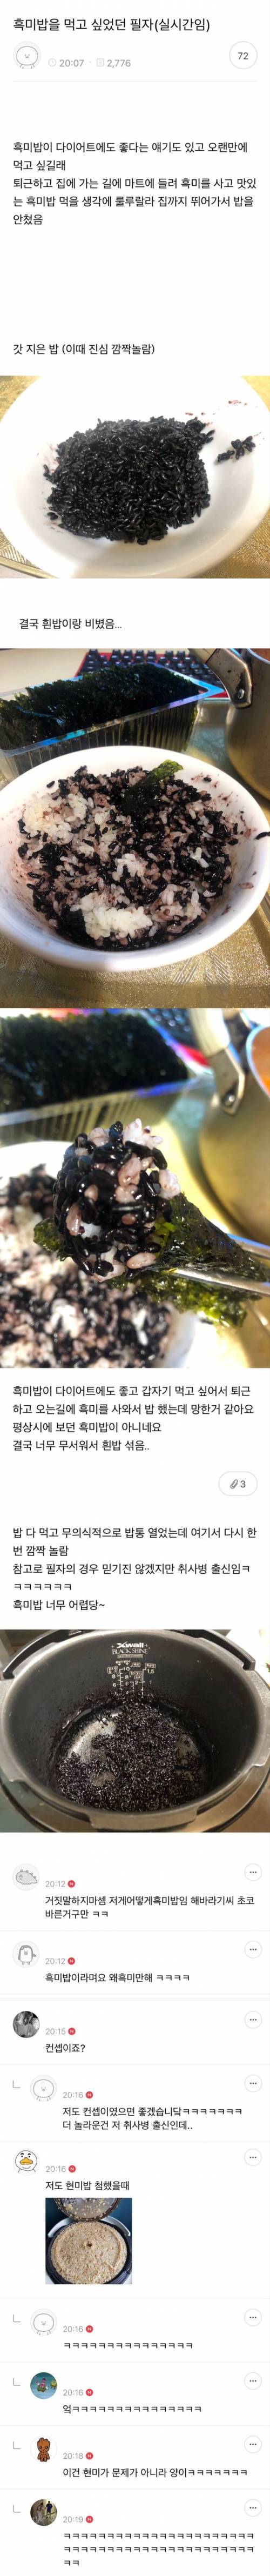 14 흑미밥 대참사.jpg